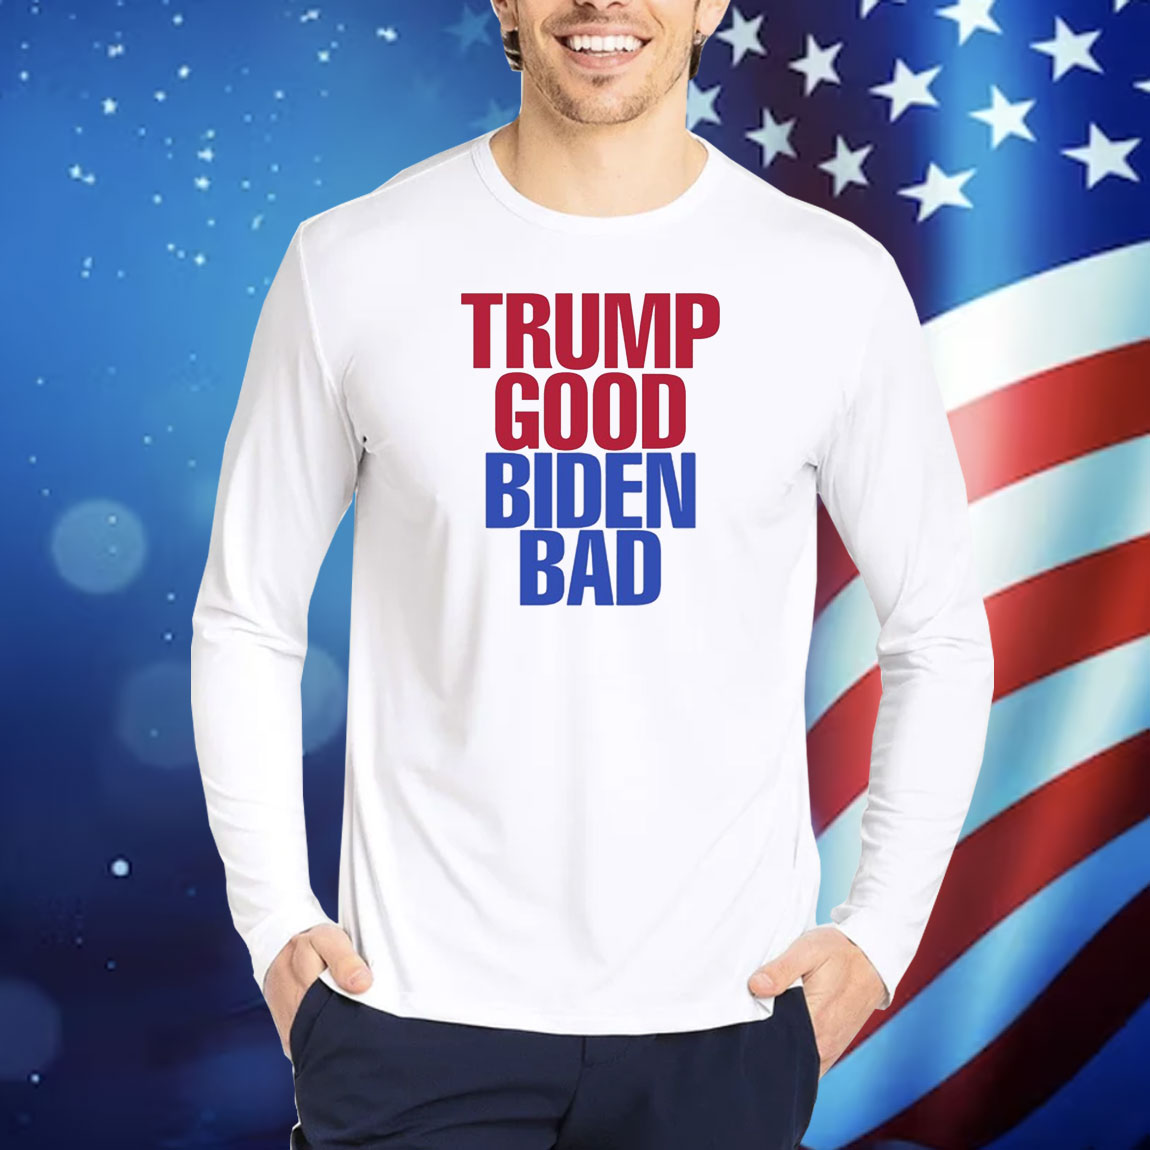 Trump Good Biden Bad TShirts